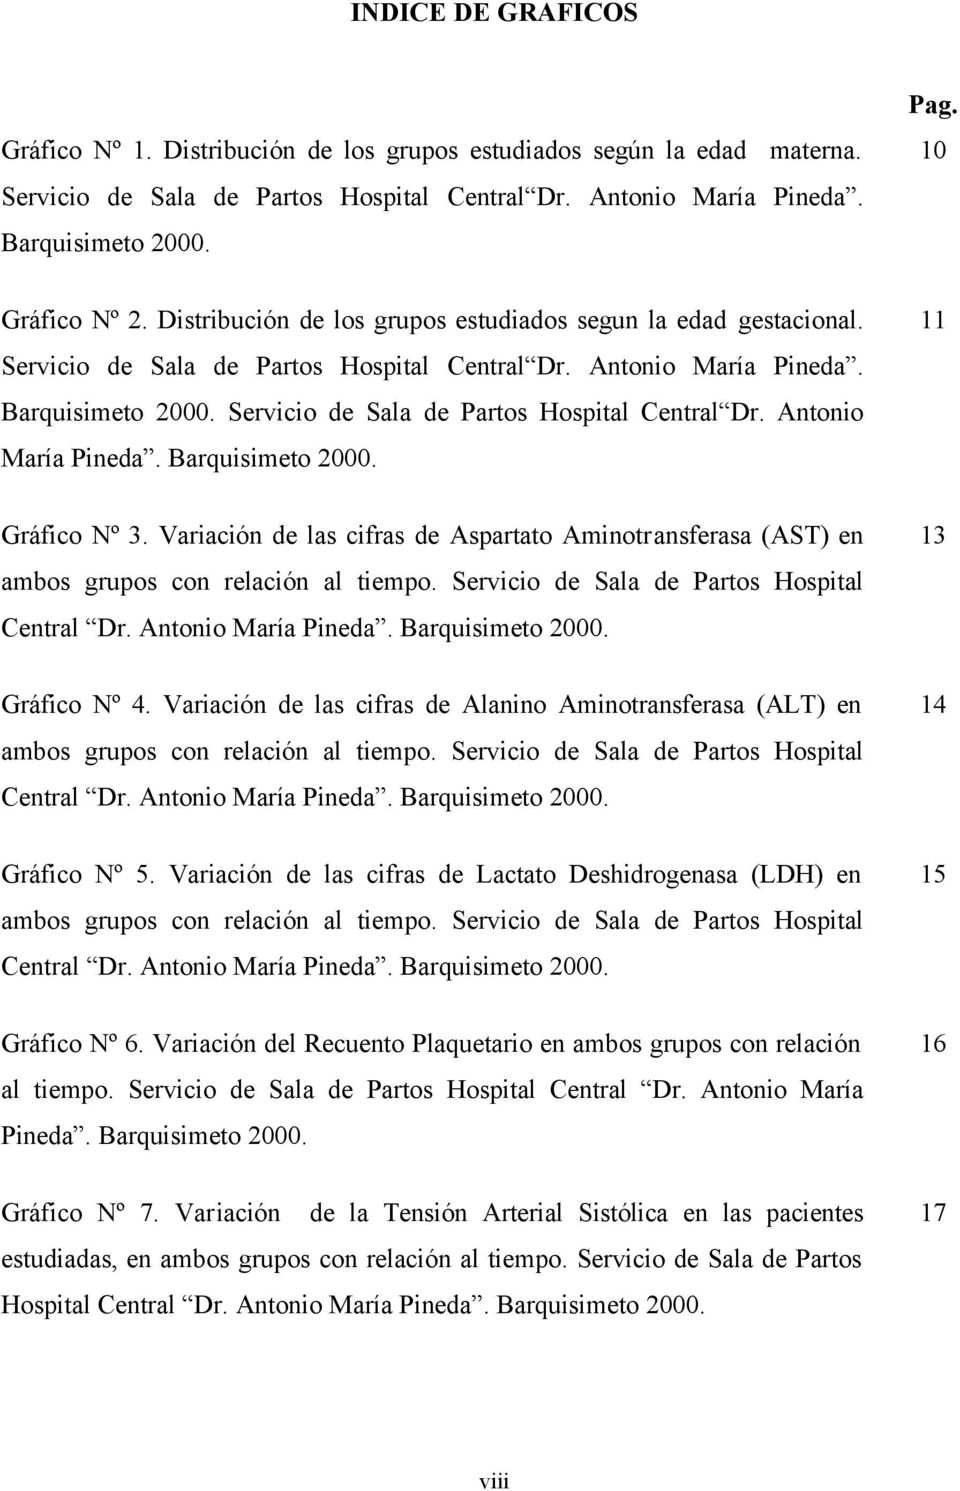 Servicio de Sala de Partos Hospital Central Dr. Antonio María Pineda. Barquisimeto 2000. Gráfico Nº 3.